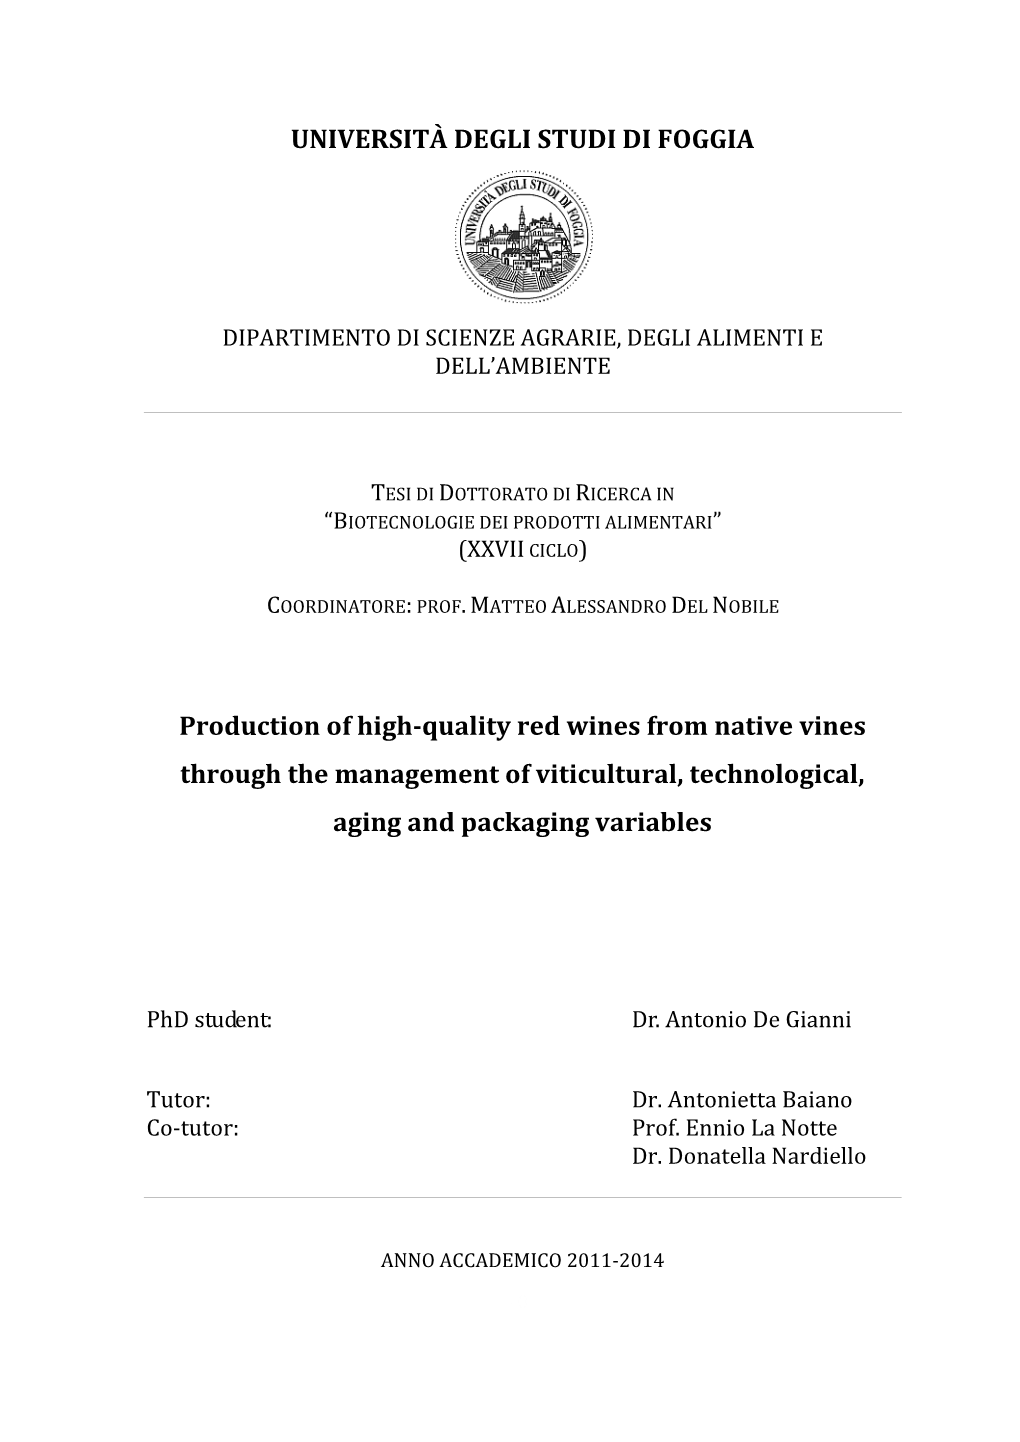 UNIVERSITÀ DEGLI STUDI DI FOGGIA Production of High-Quality